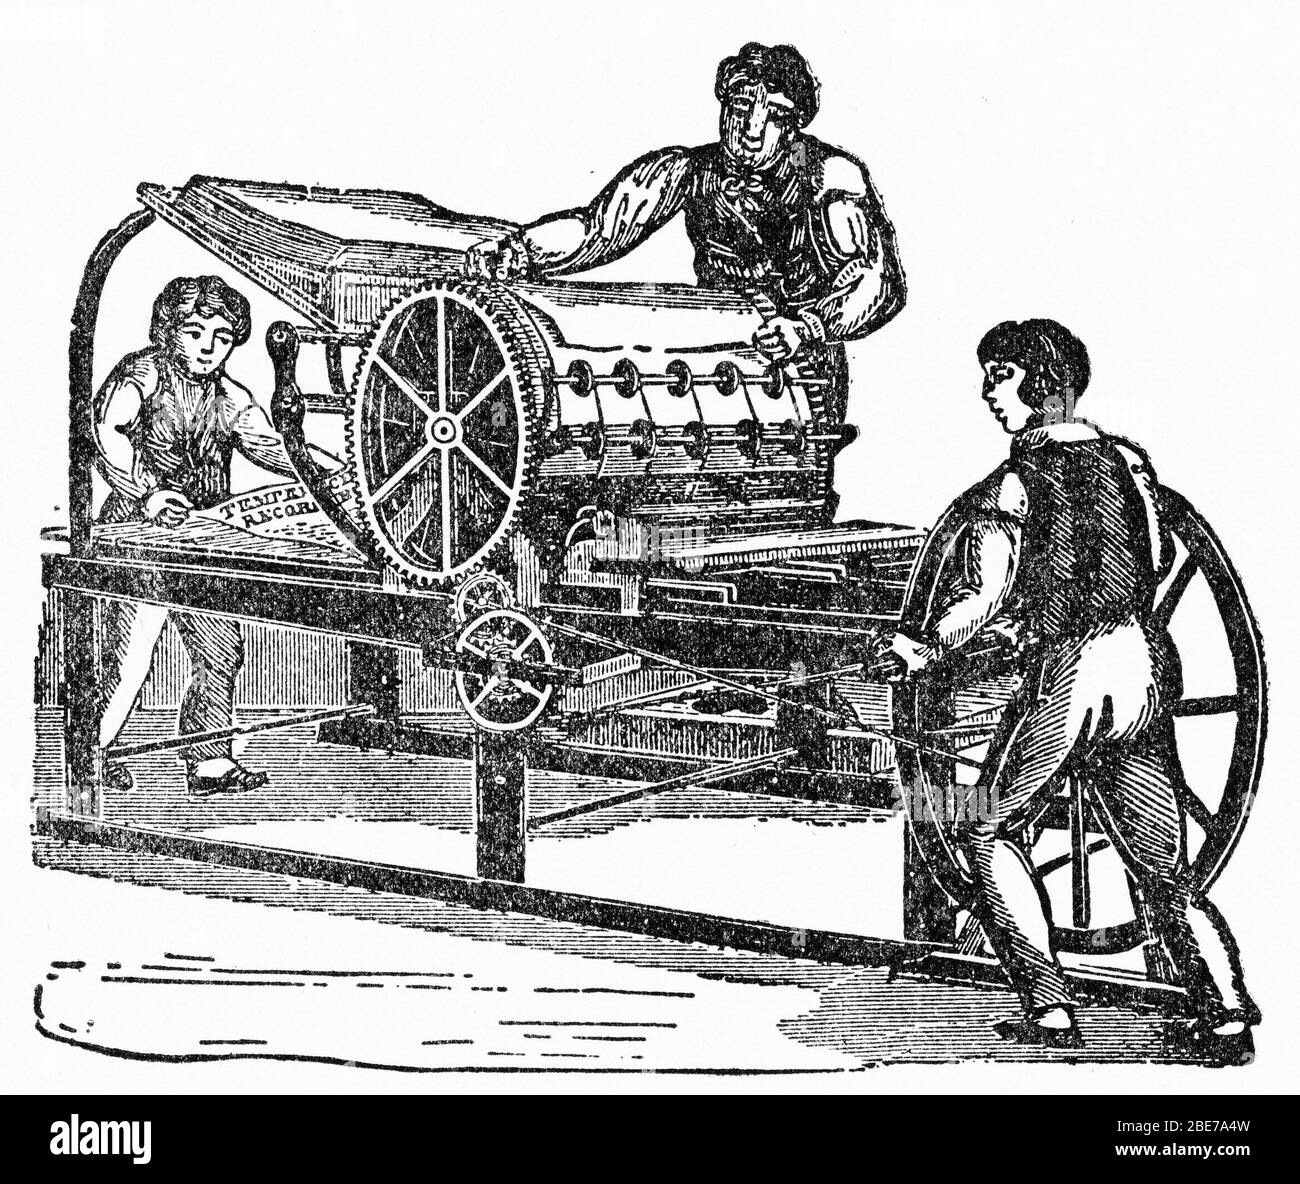 Gravure de la première presse à imprimer en bouteille réalisée aux Etats-Unis Banque D'Images